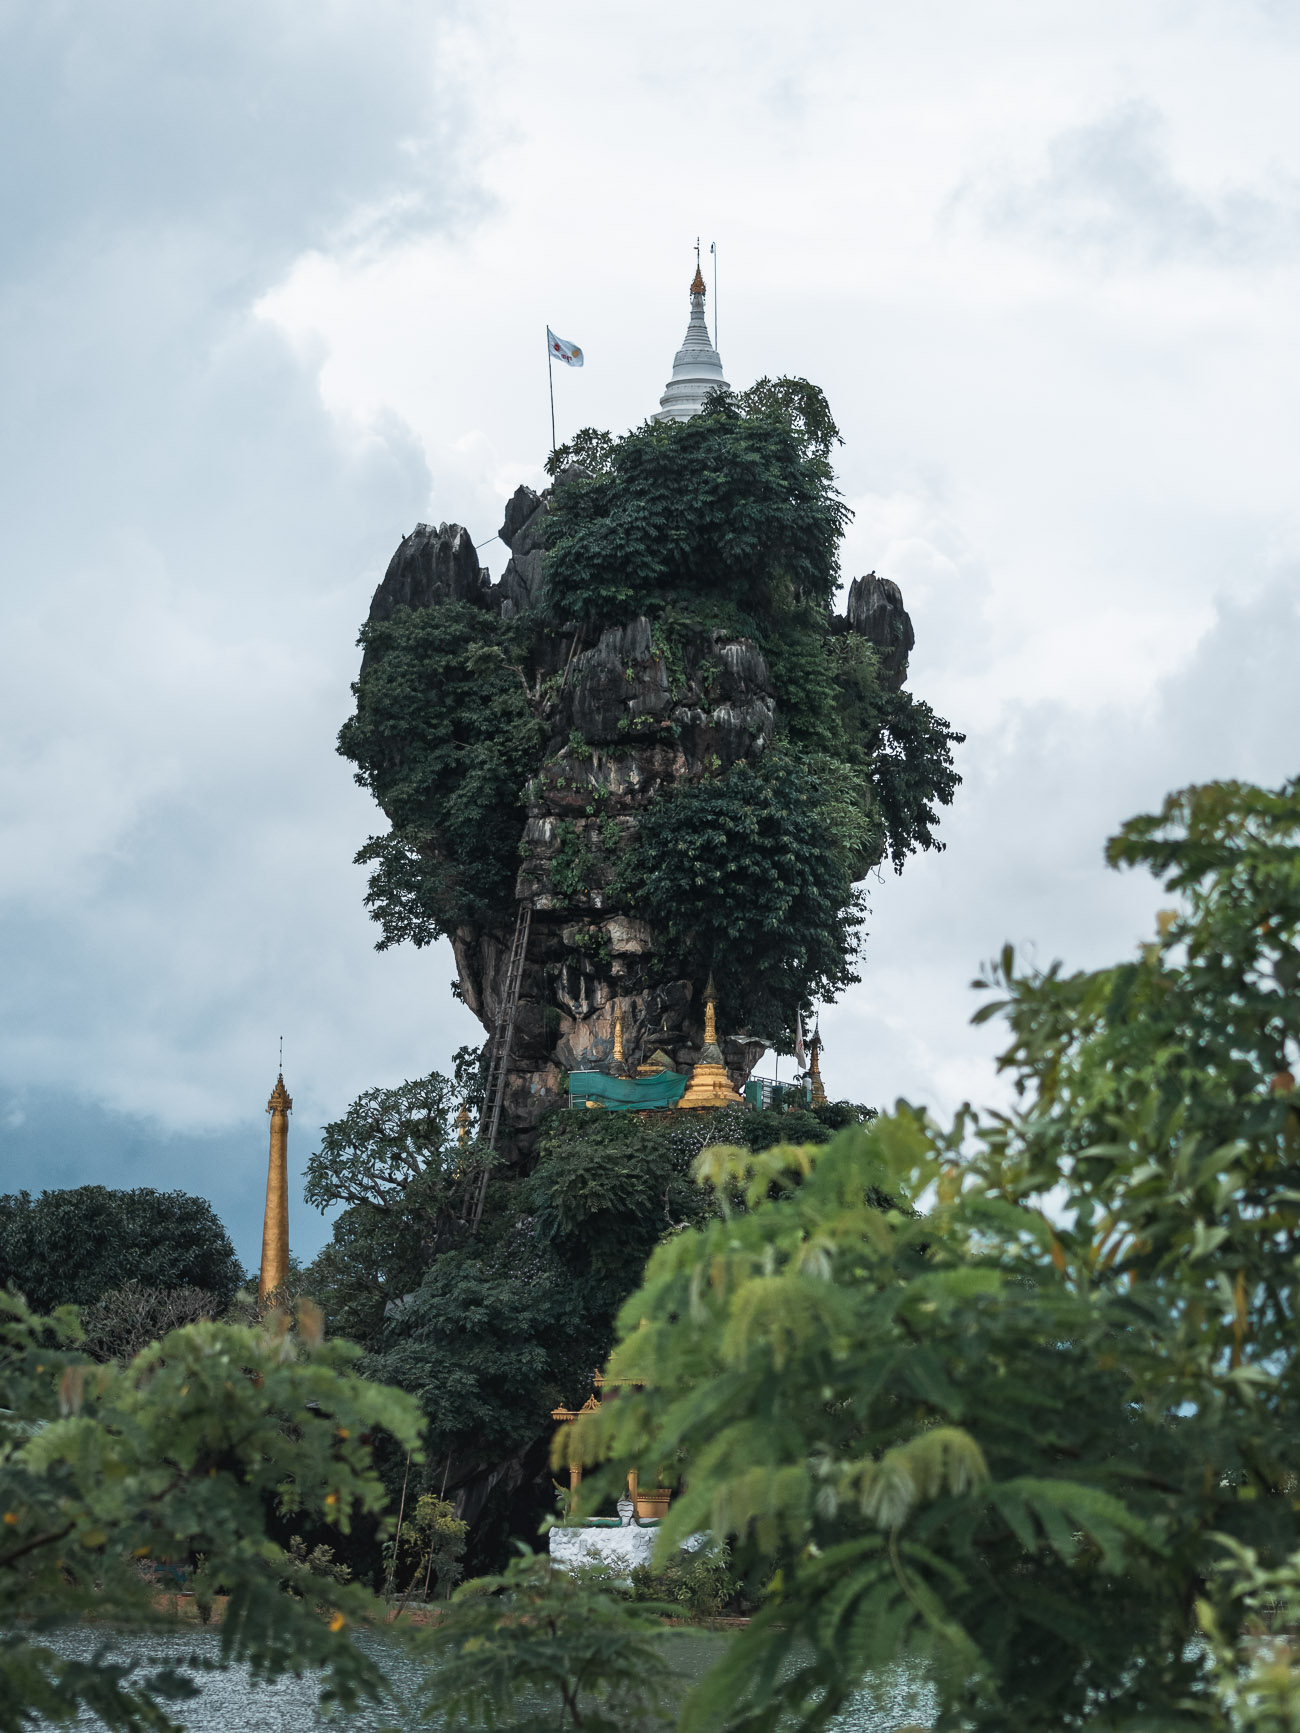 birma hpa-an kyauk-ka-lat pagoda